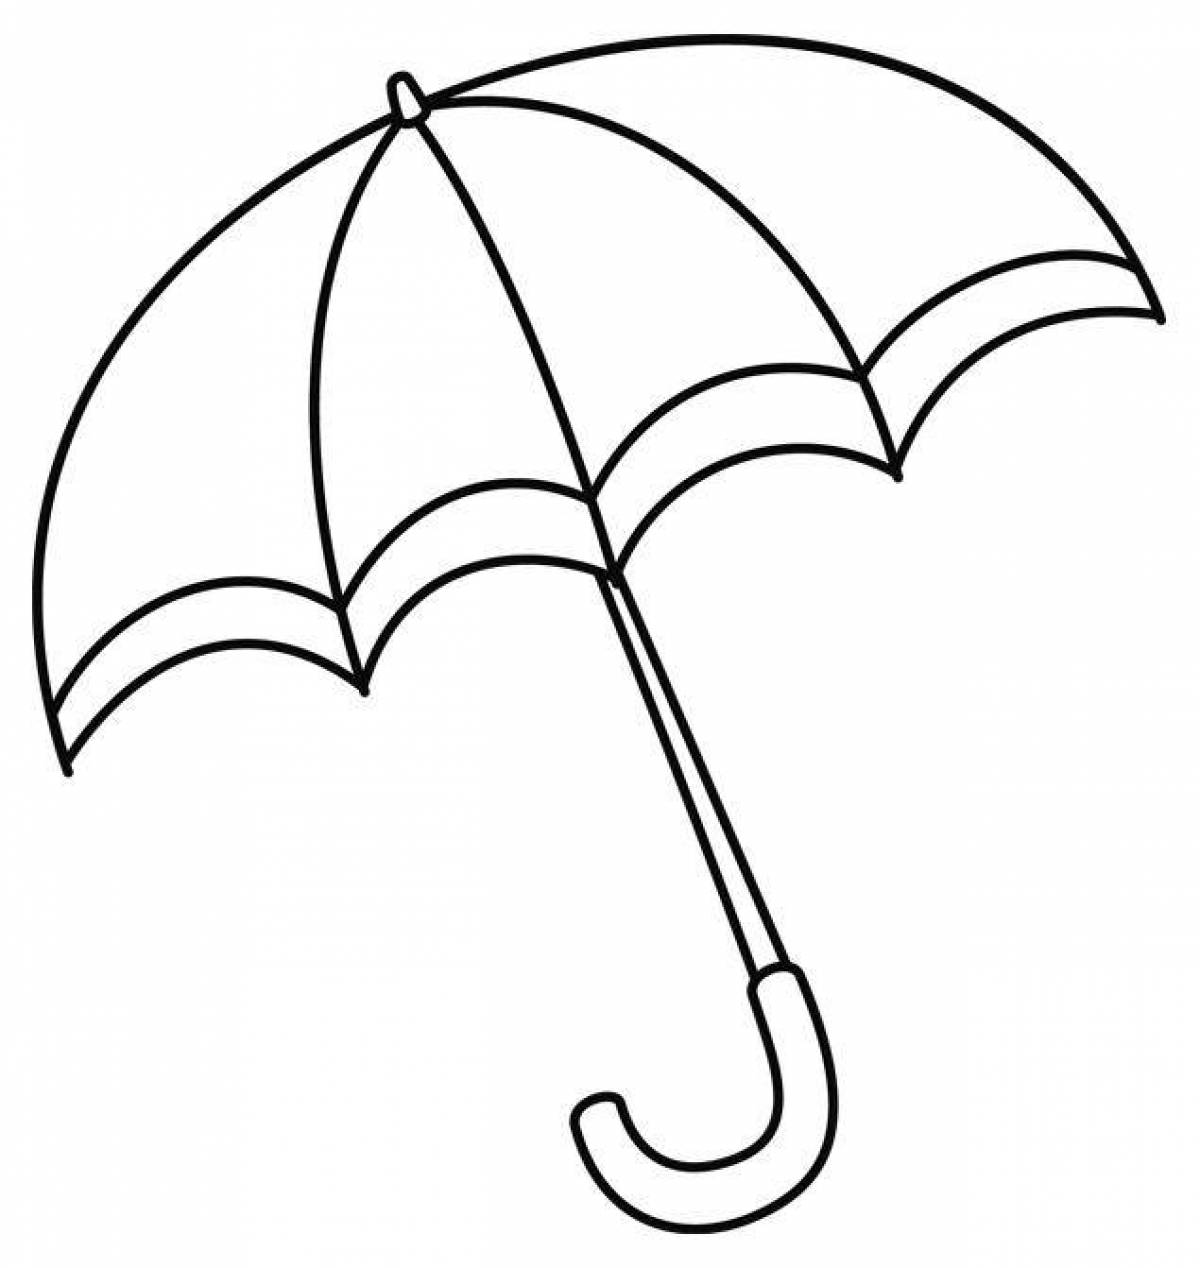 Красочная и увлекательная раскраска зонтик для детей